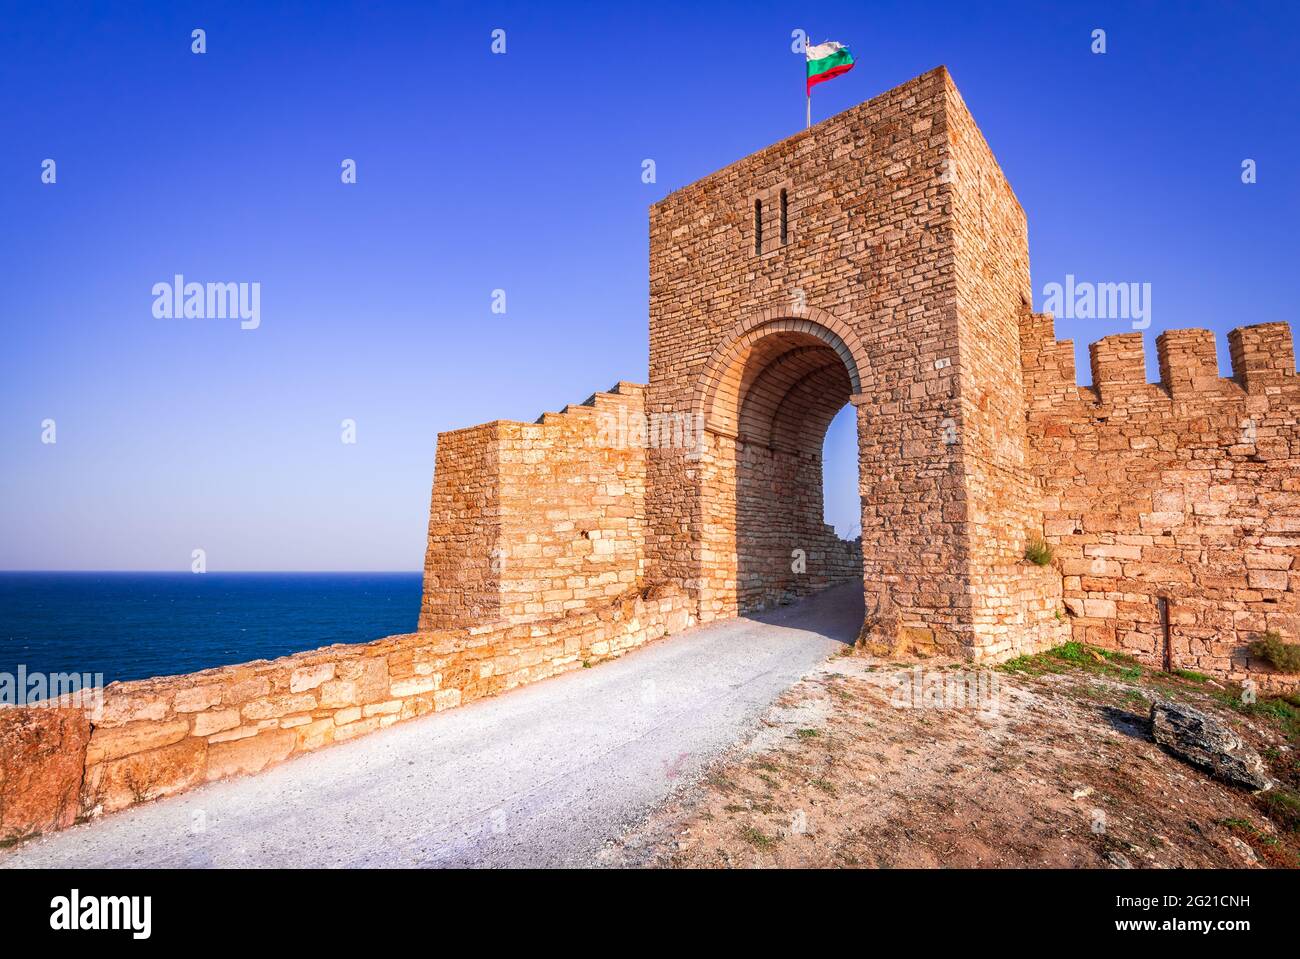 Forteresse de Kaliakra, Bulgarie. Ruines médiévales sur le Cap Kaliakra, Mer Noire, Bulgarie Banque D'Images